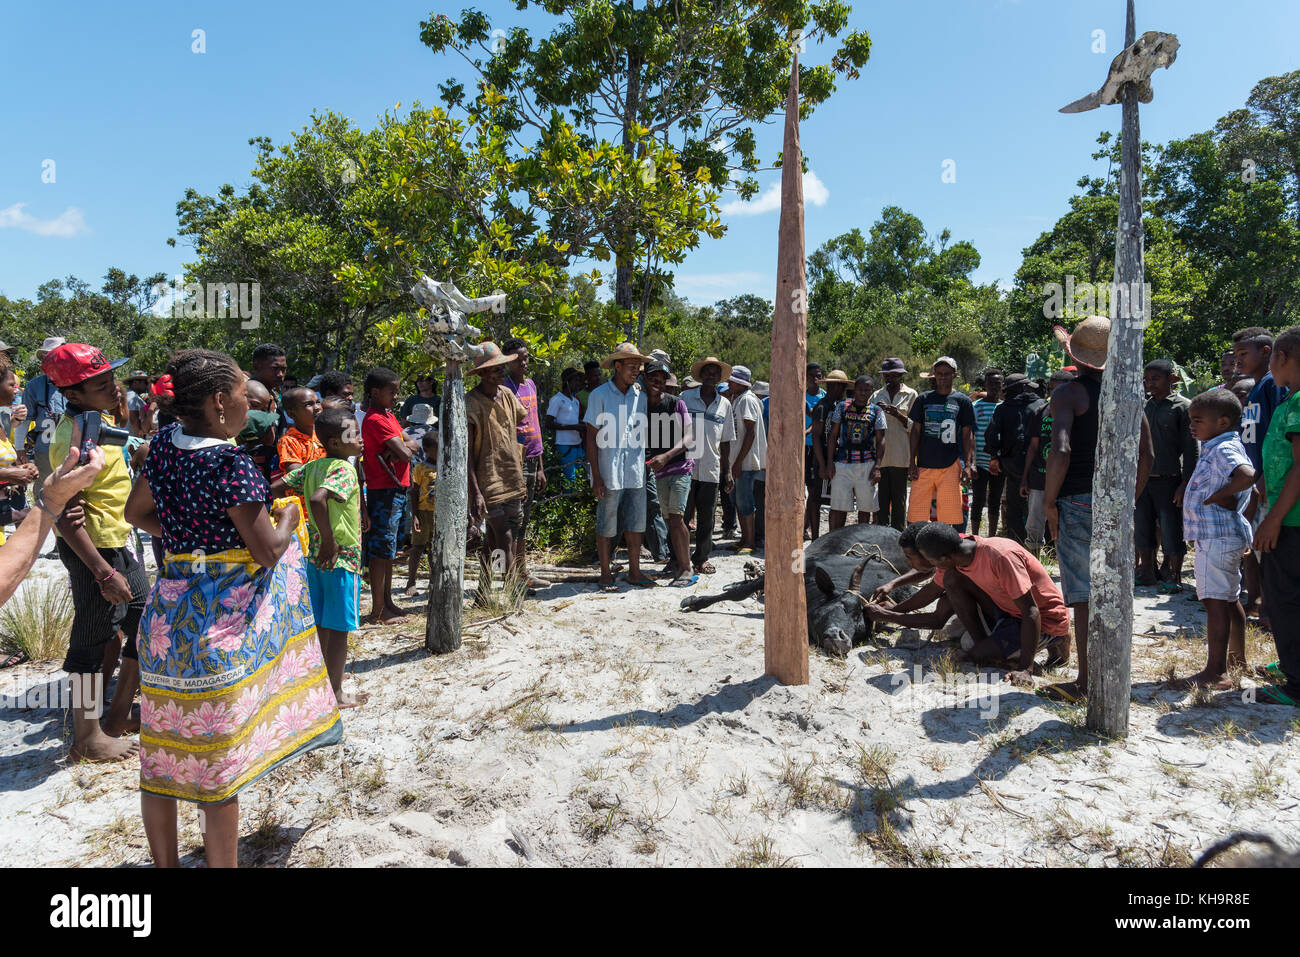 Cérémonie de sacrifice de zébus, lac ampitabe, Toamasina, Madagascar, Afrique Banque D'Images